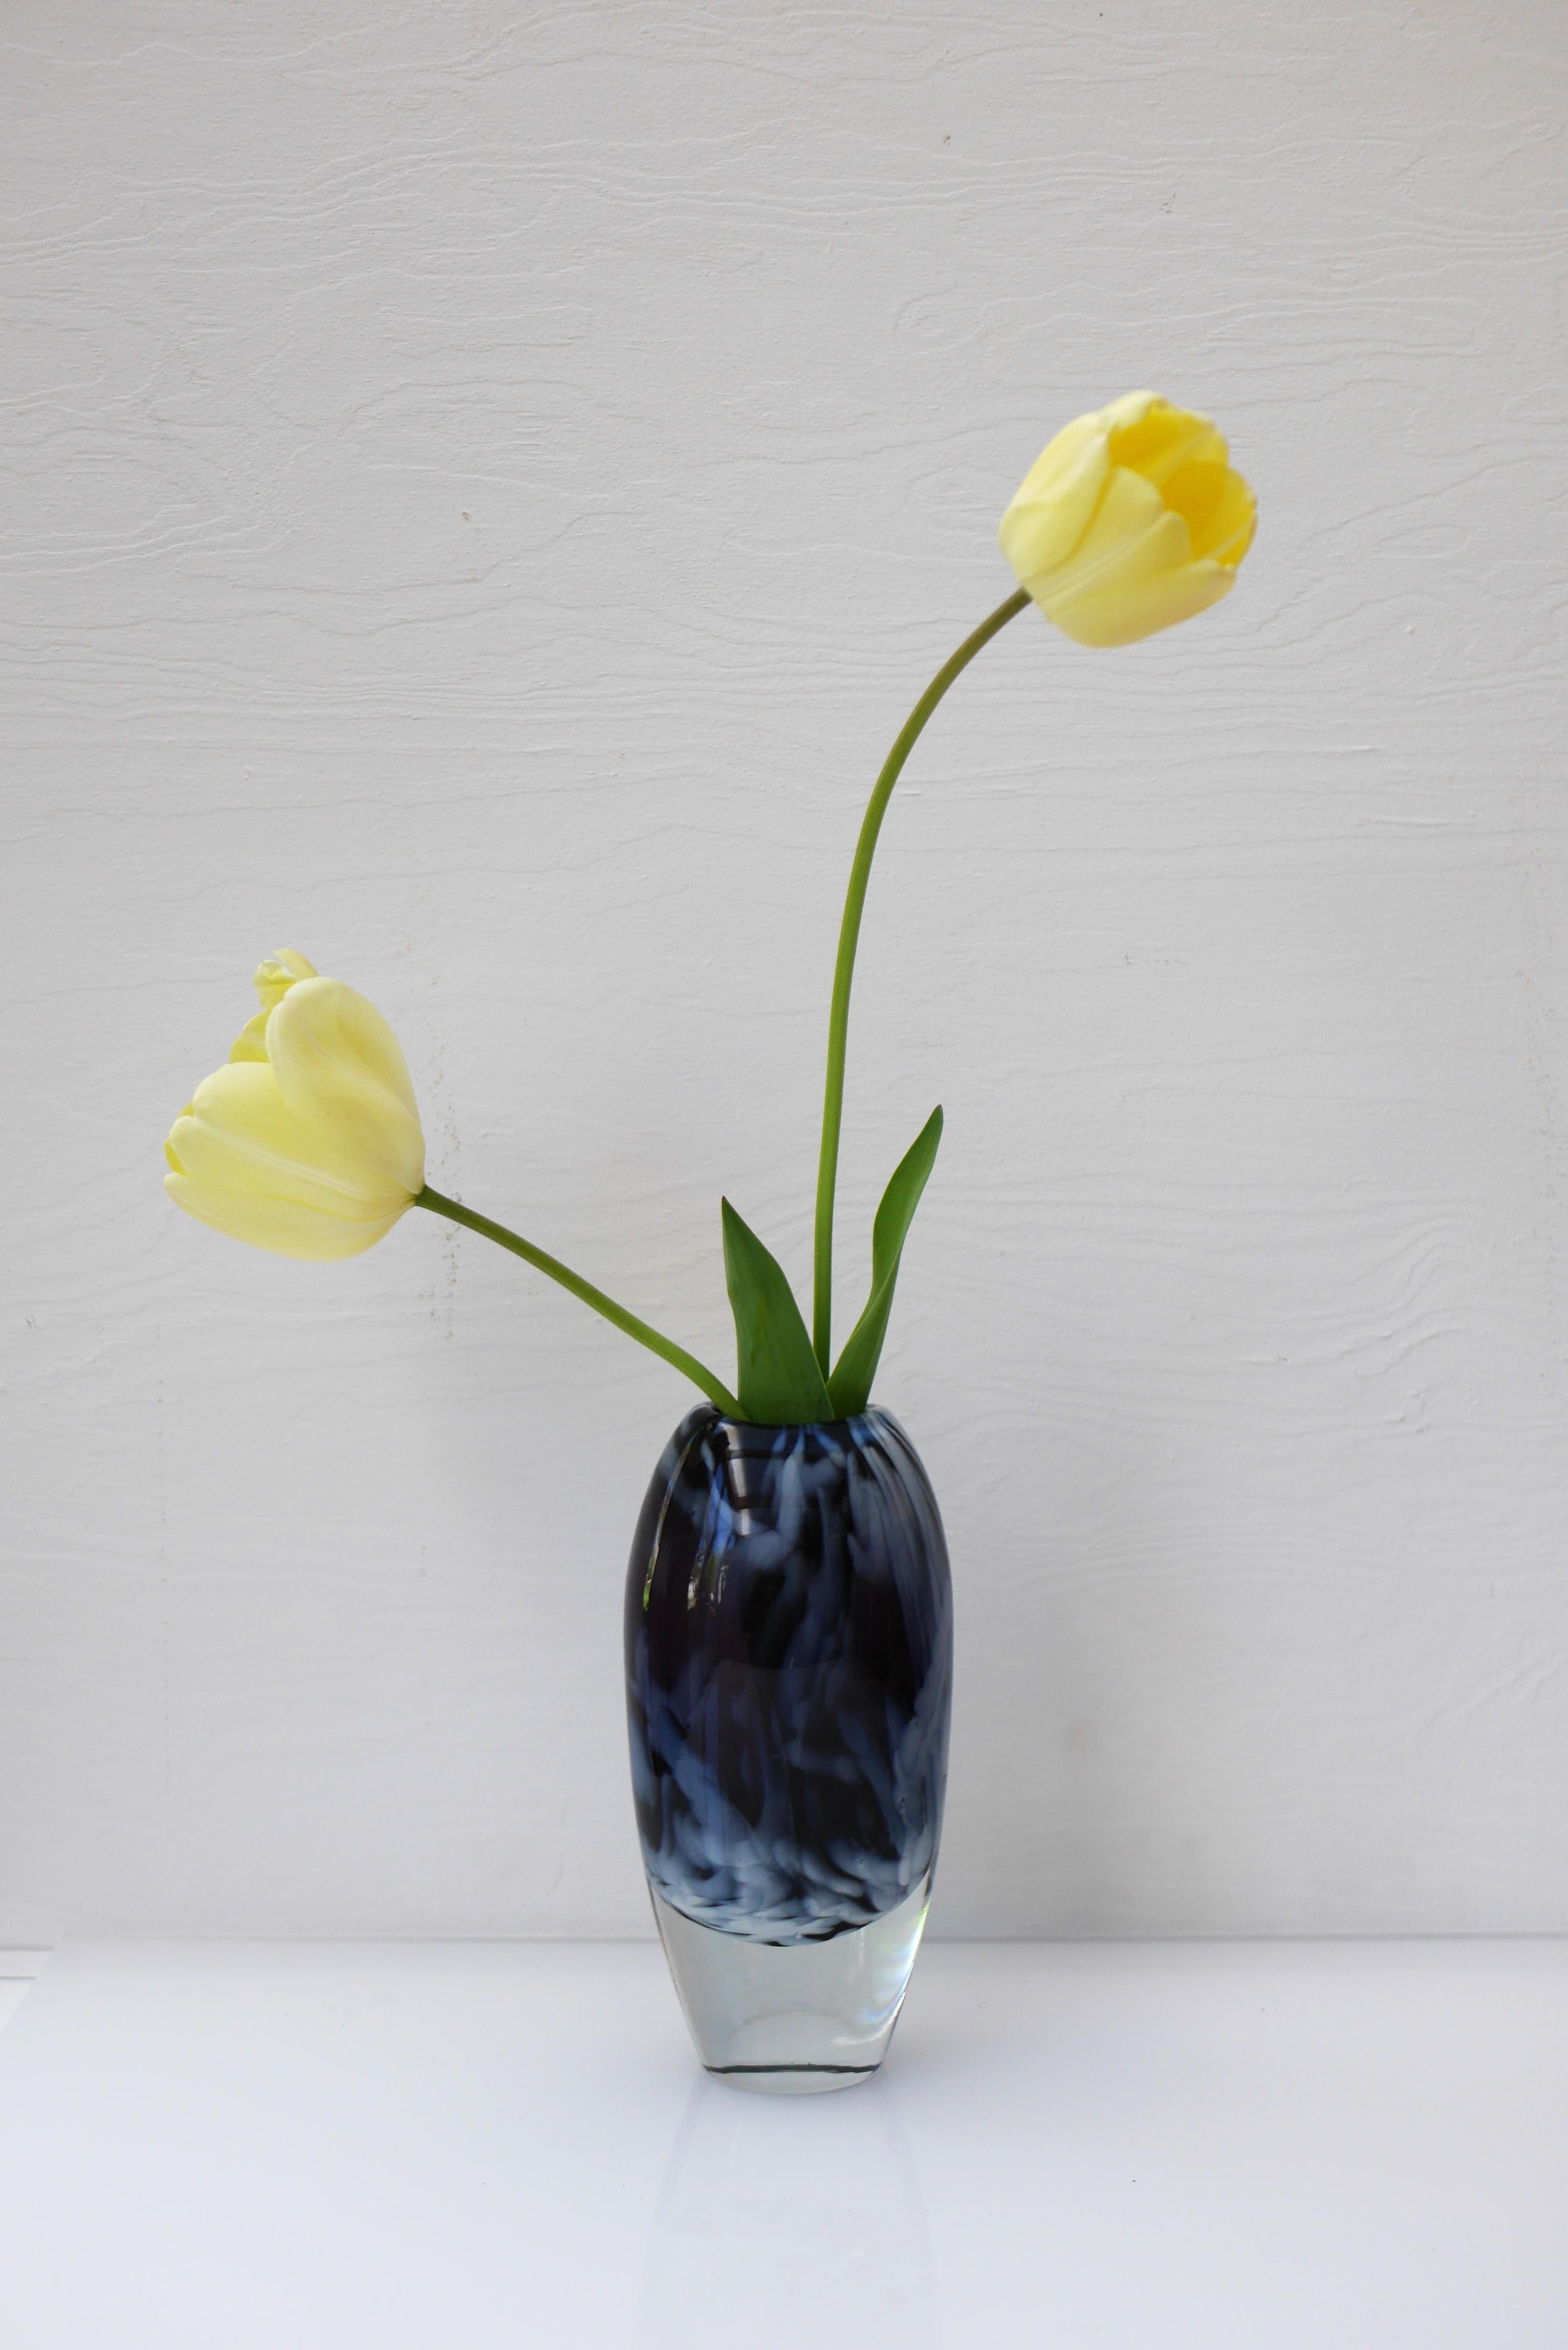 Late 20th Century Scandinavian art glass Vase by Kjell Engman, Sea Glassbruk, Sweden For Sale